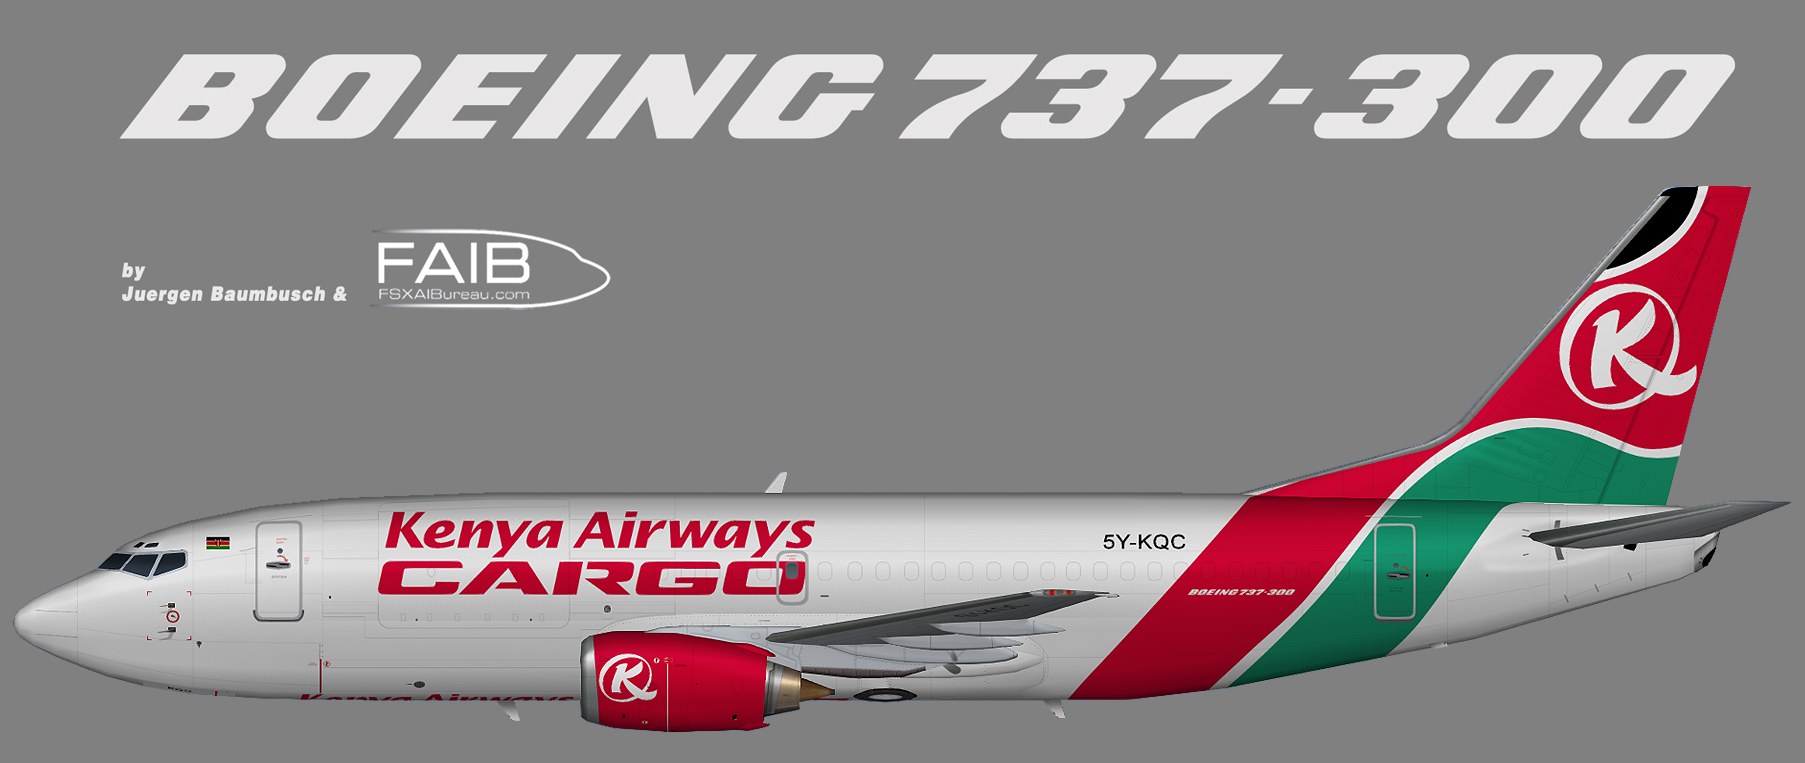 Kenya Airways Boeing 737-300F